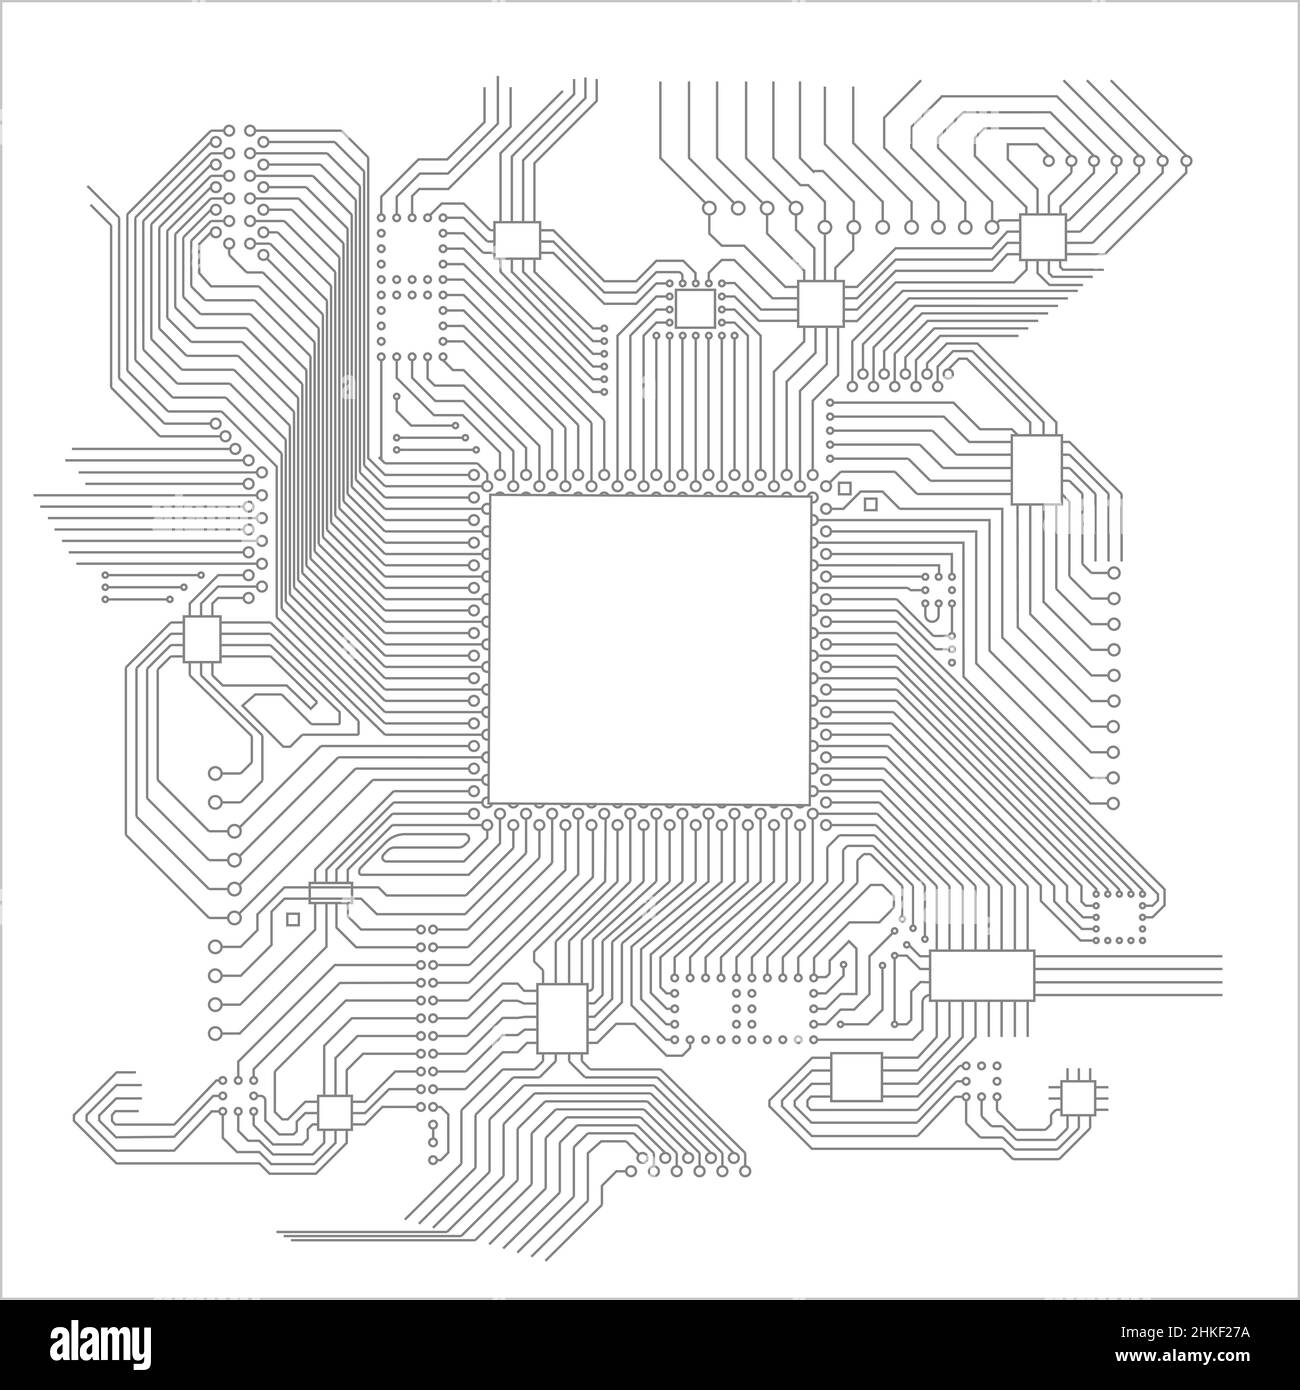 Illustrazione del vettore della scheda a circuiti stampati. Illustrazione high tech del circuito elettronico vettoriale. Programmazione elettronica e robotica. Illustrazione Vettoriale